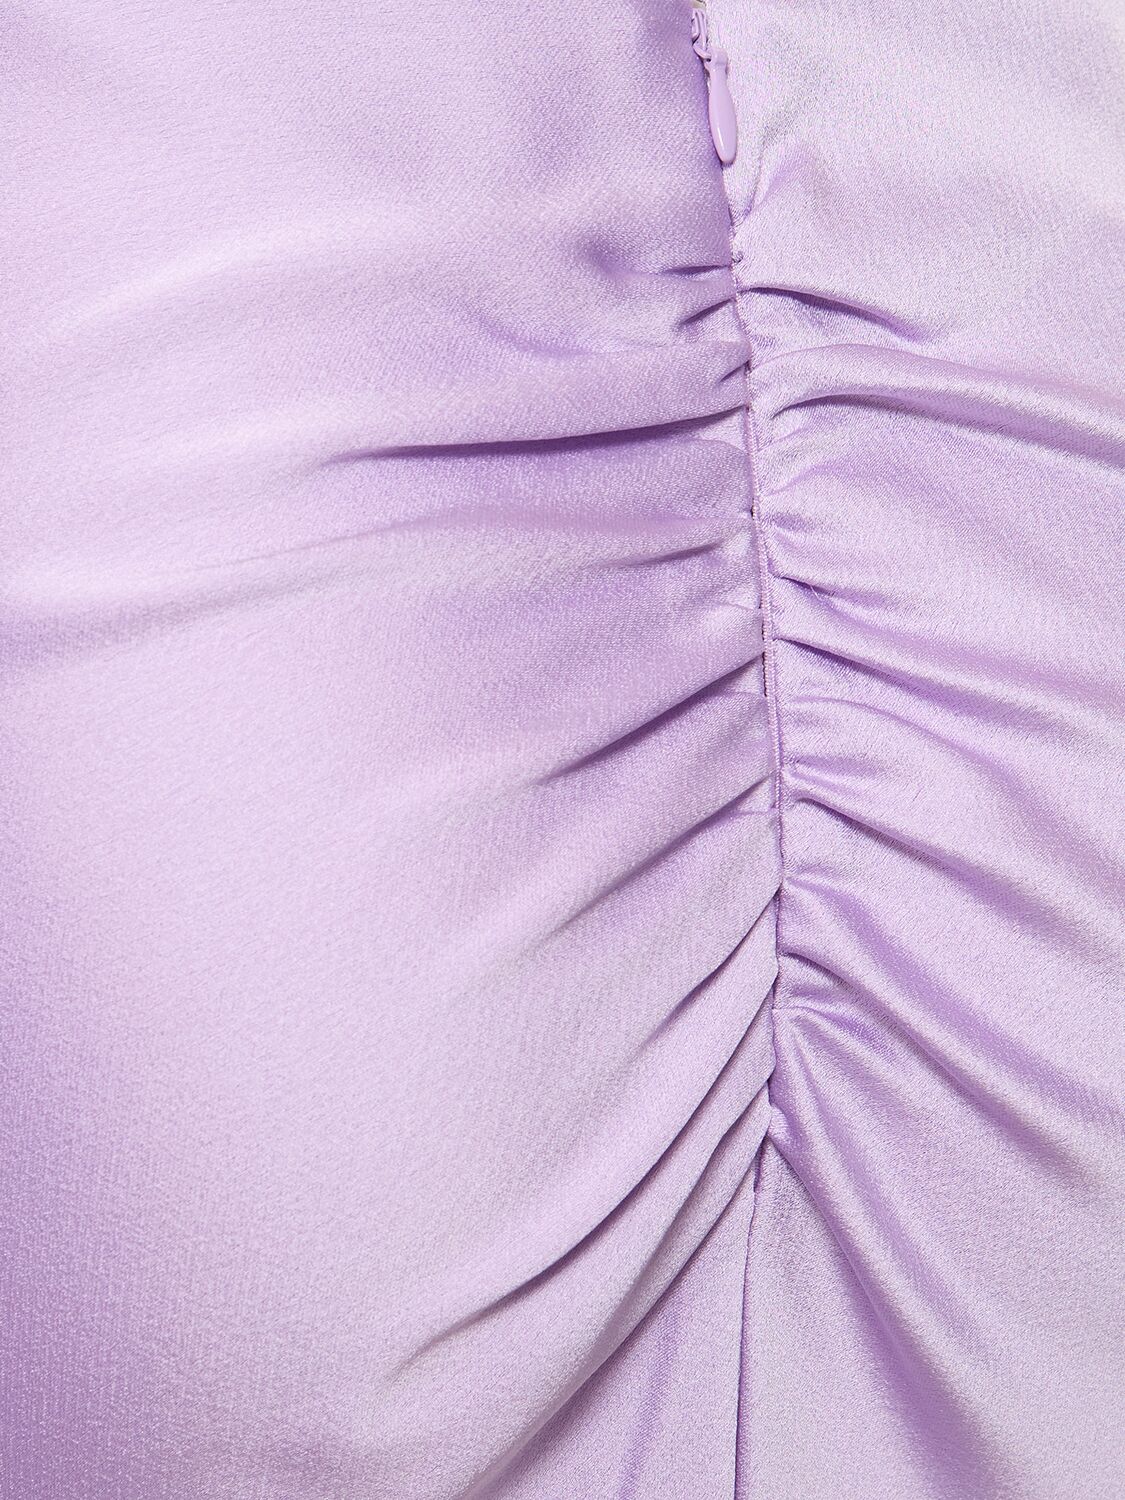 NINFEA科技织物绉纱绸缎超长吊带连衣裙